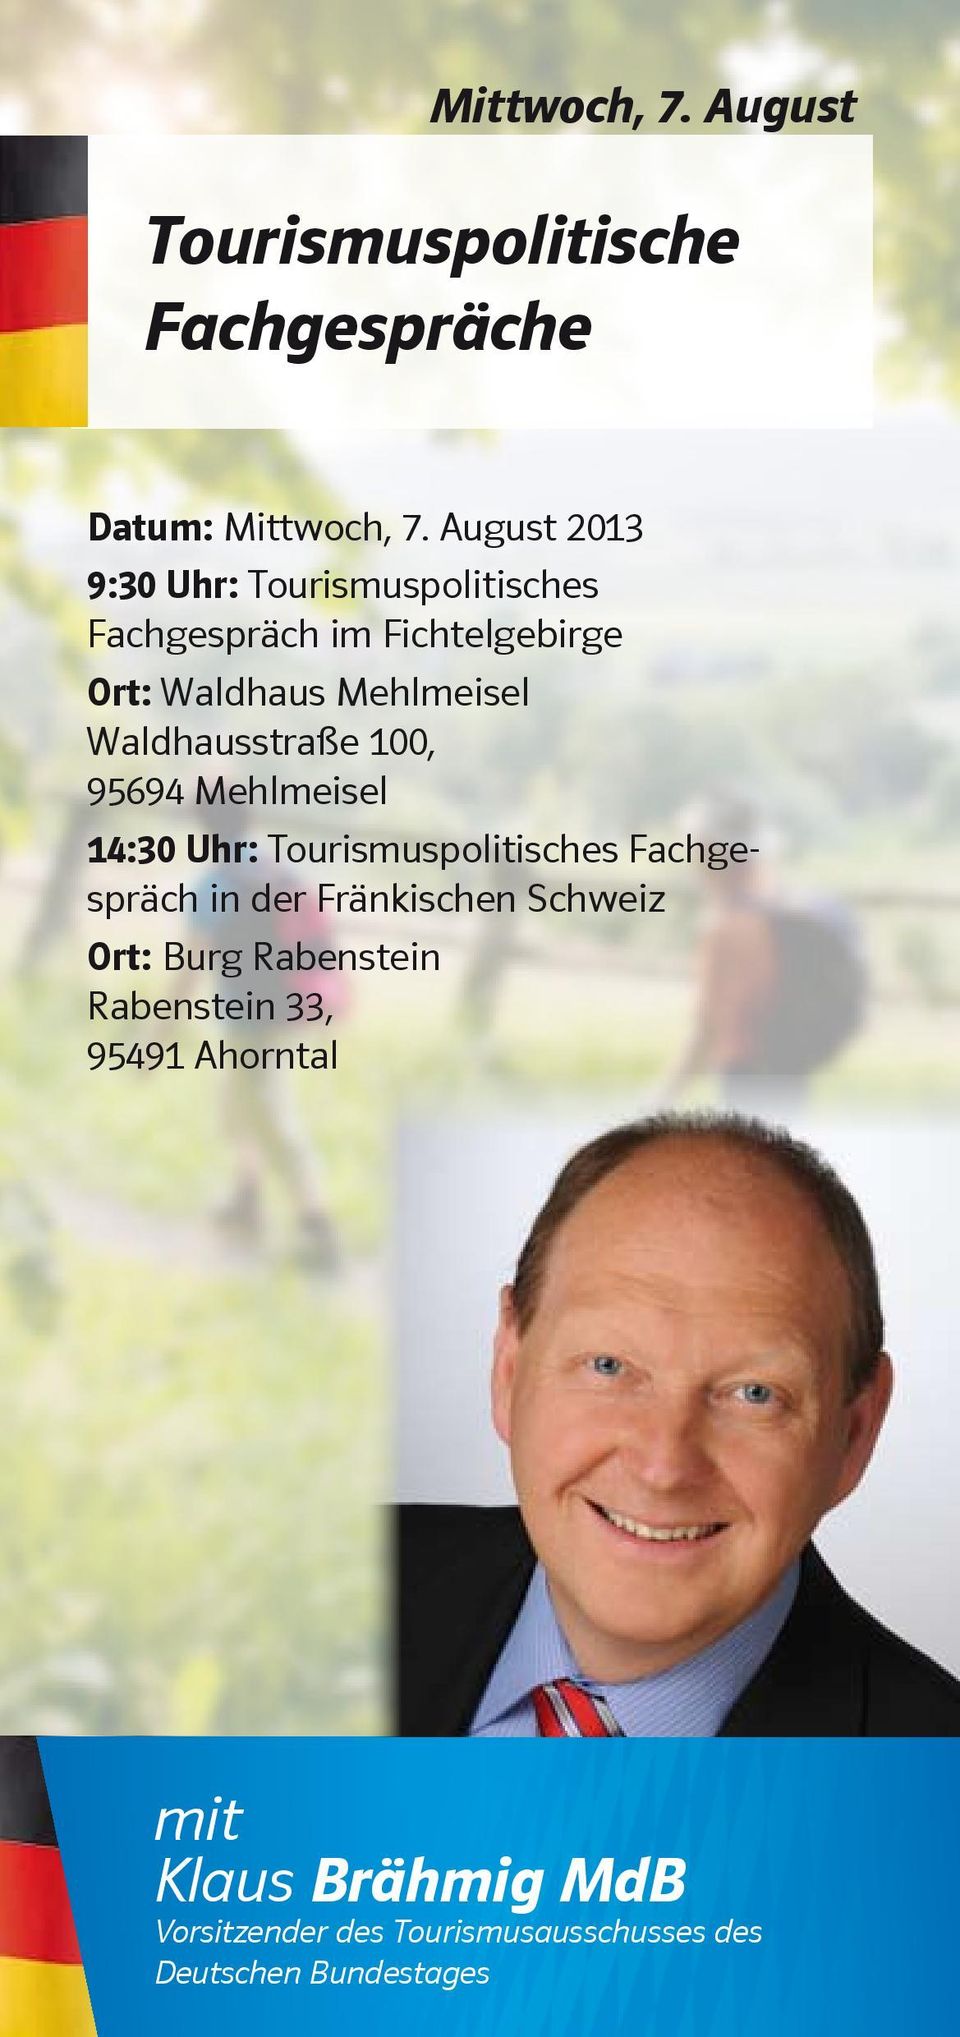 Waldhausstraße 100, 95694 Mehlmeisel 14:30 Uhr: Tourismuspolitisches Fachgespräch in der Fränkischen